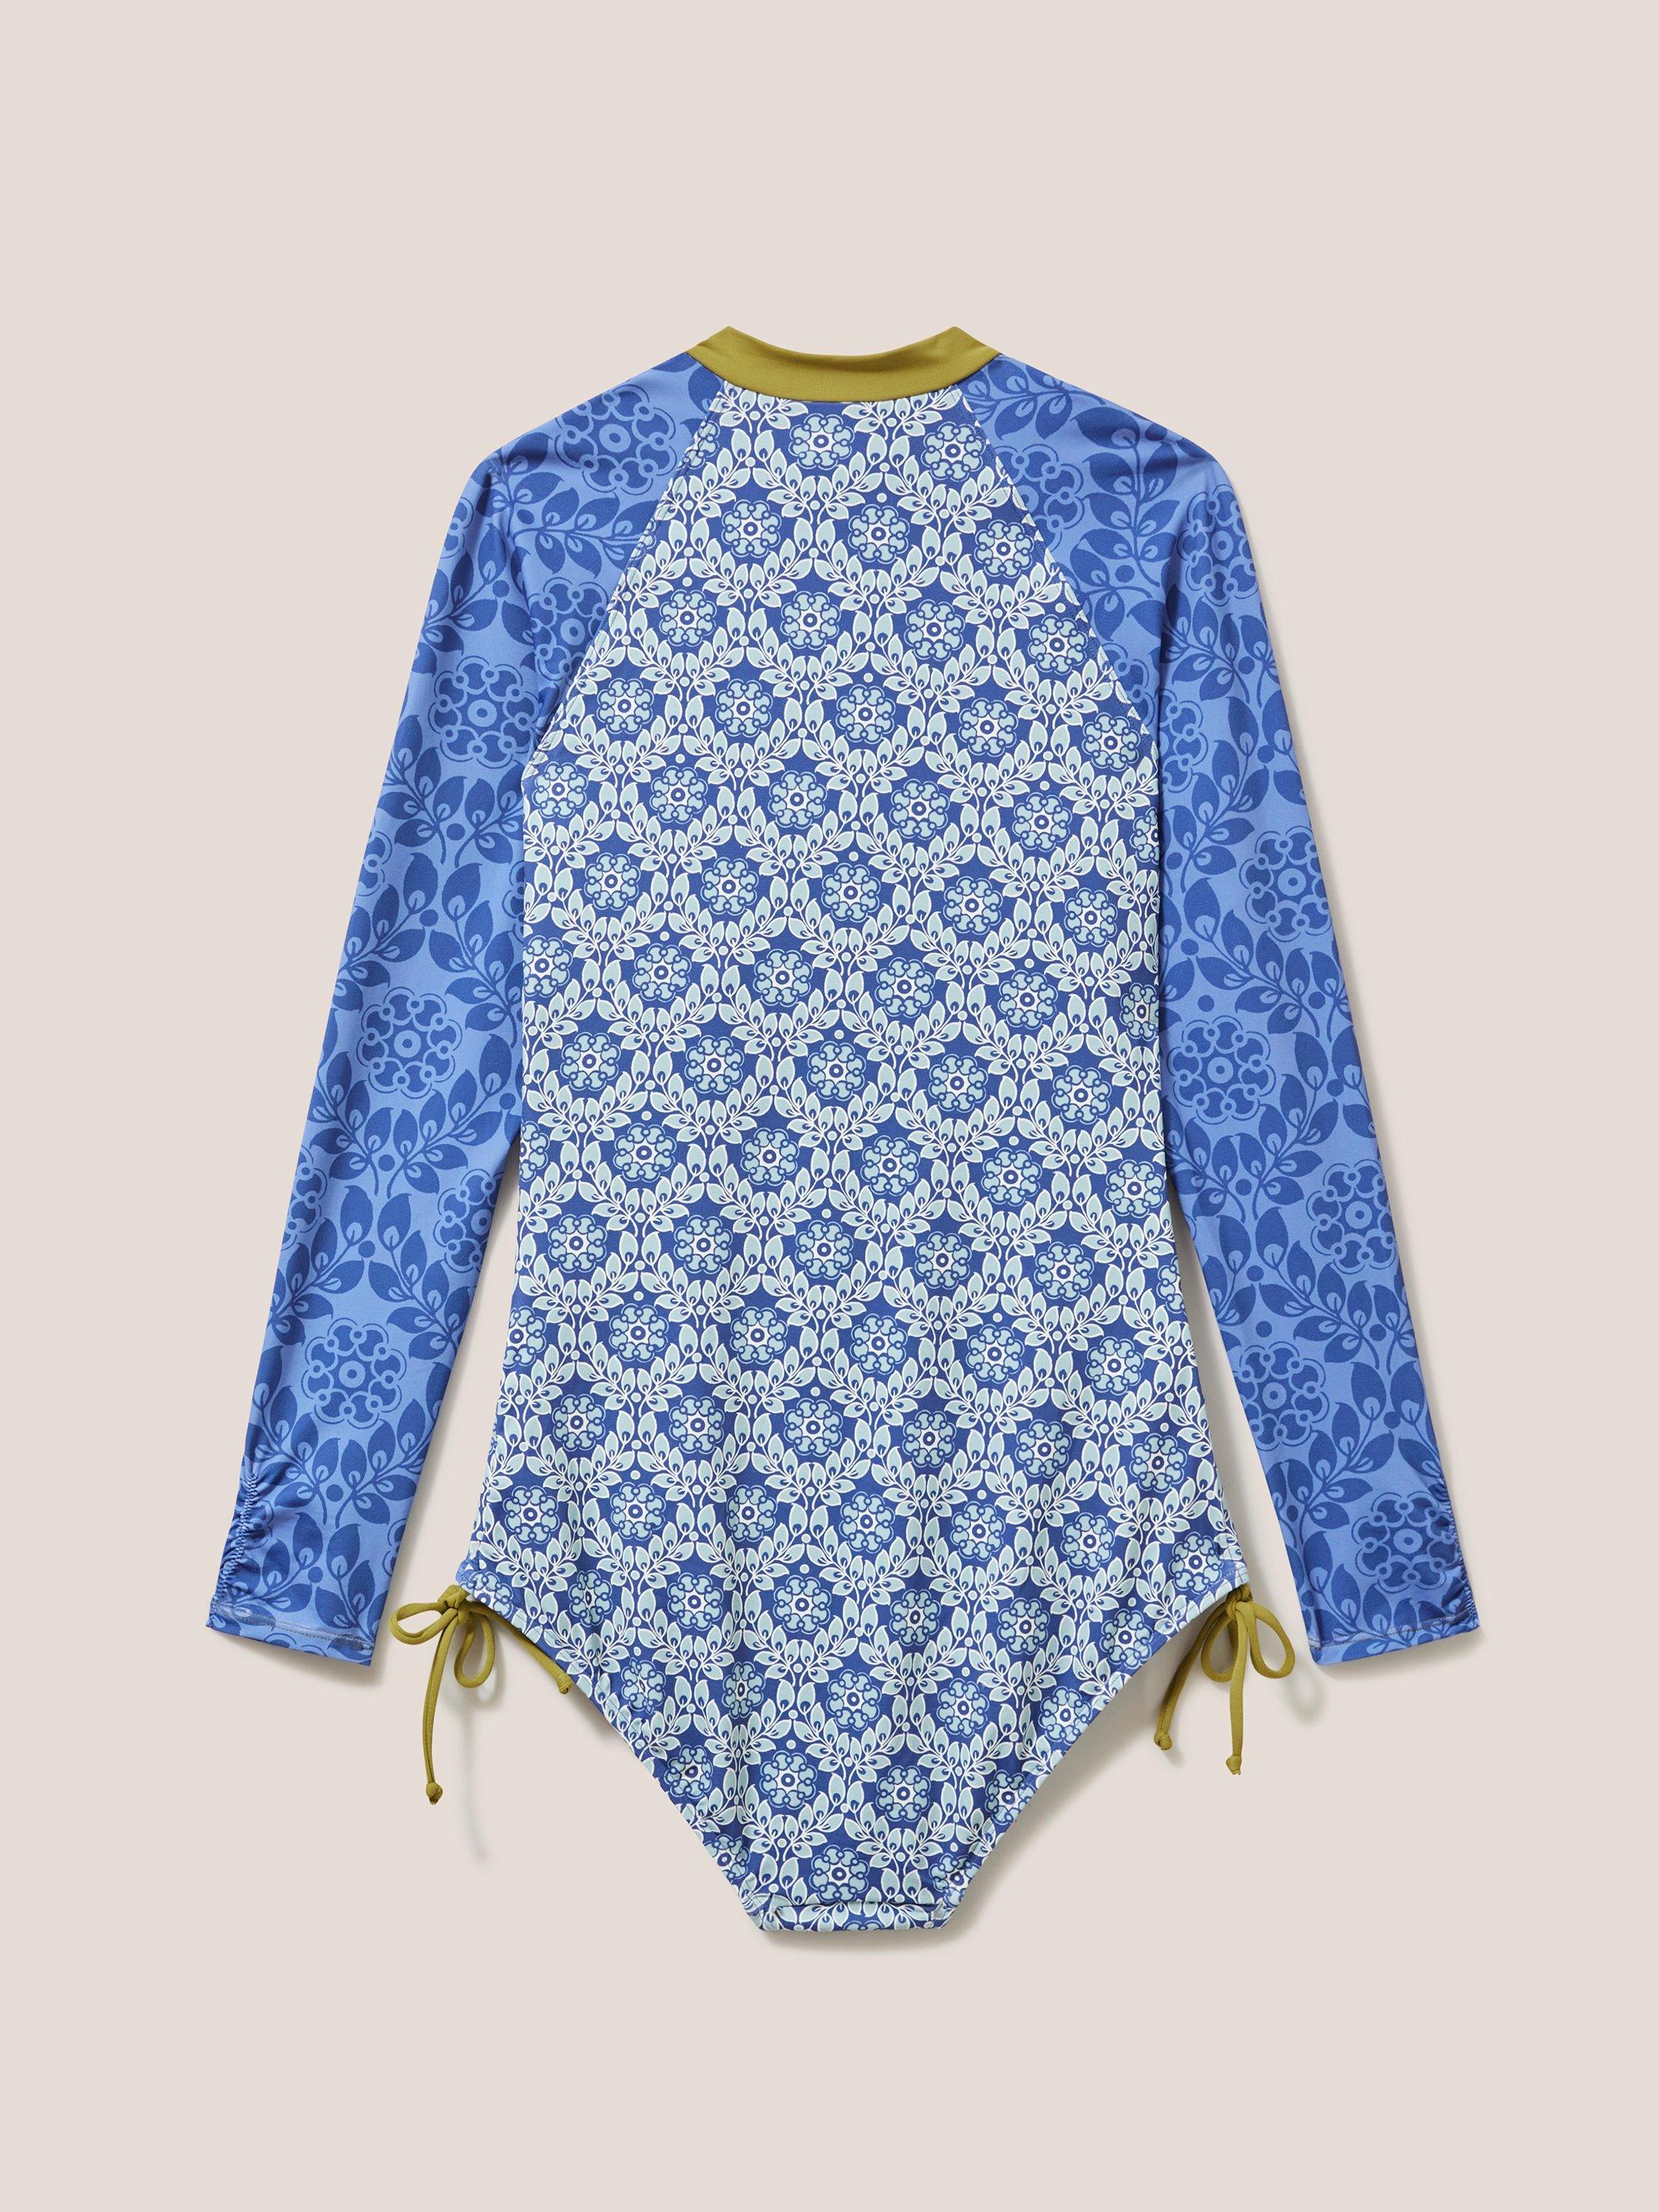 Berri Swimsuit in BLUE MLT - FLAT BACK